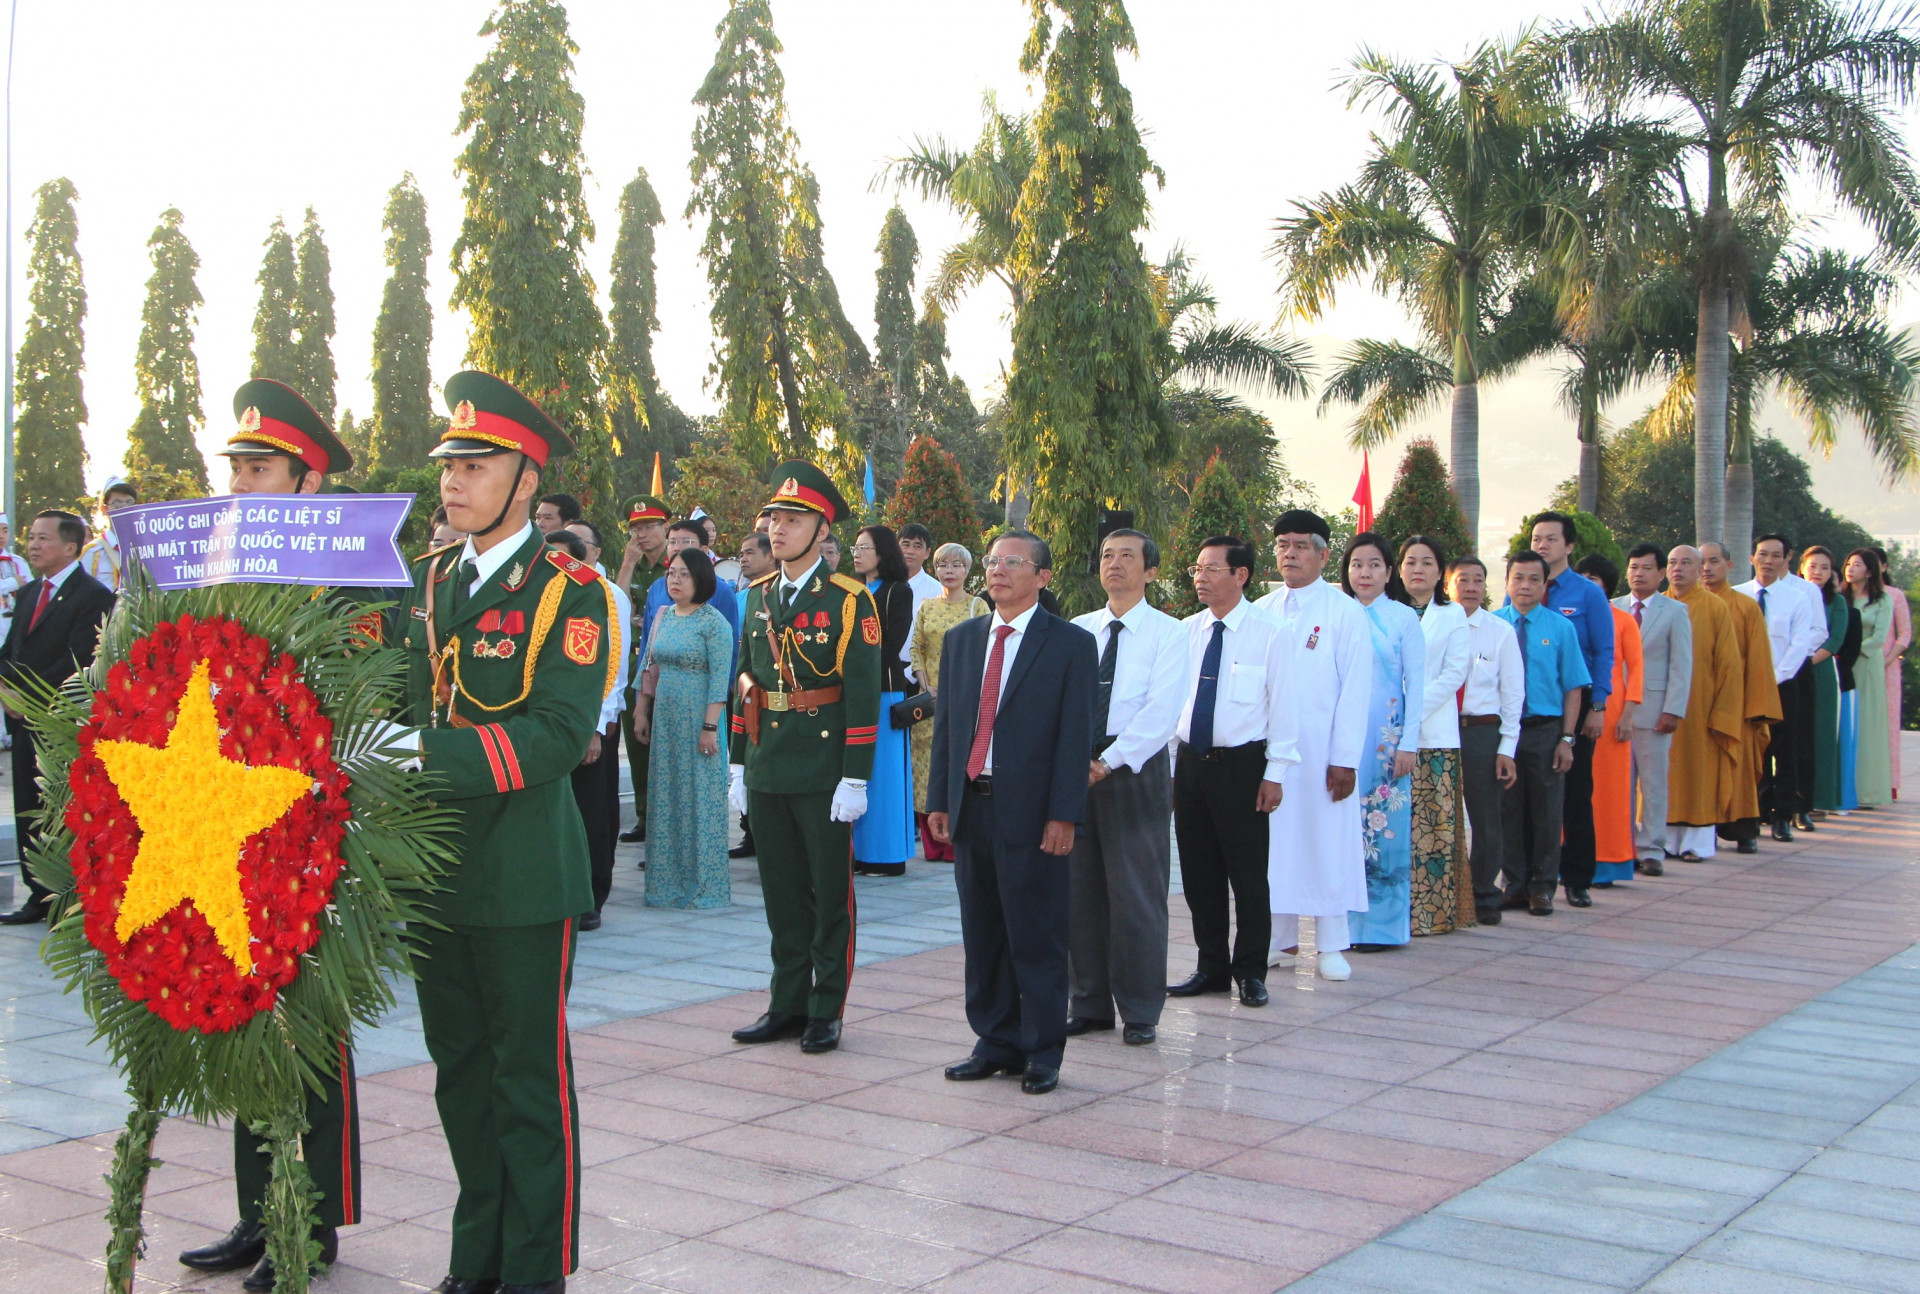 Đoàn đại biểu UBMTTQ Việt Nam tỉnh do đồng chí Trần Ngọc Thanh dẫn đầu vào viếng.